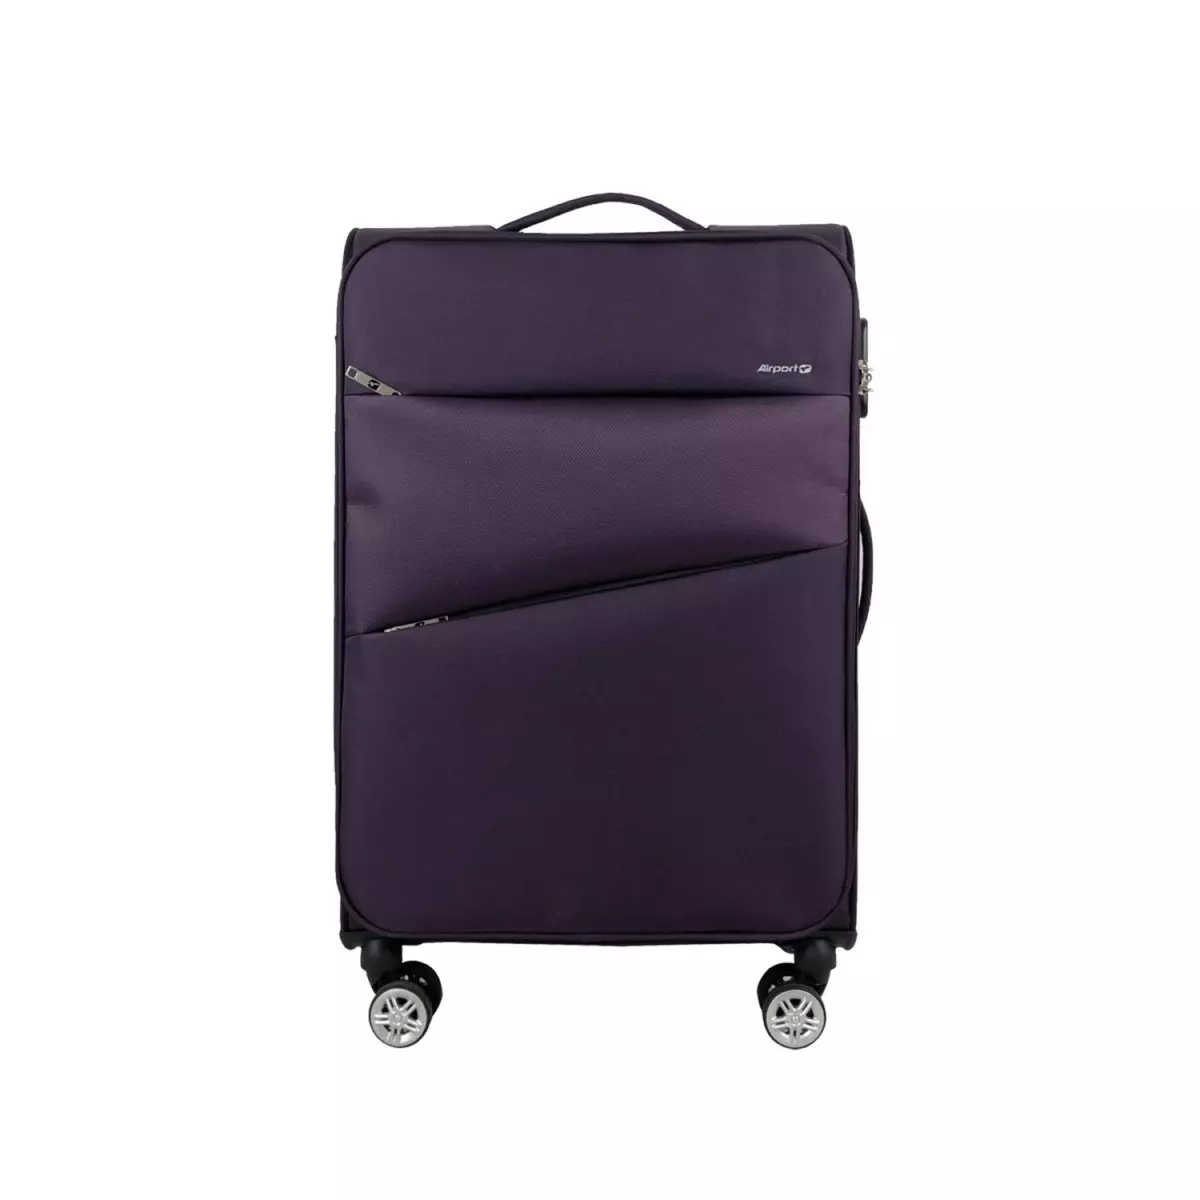 AIRPORT Valise souple violette Perfeckto 66x42x22cm